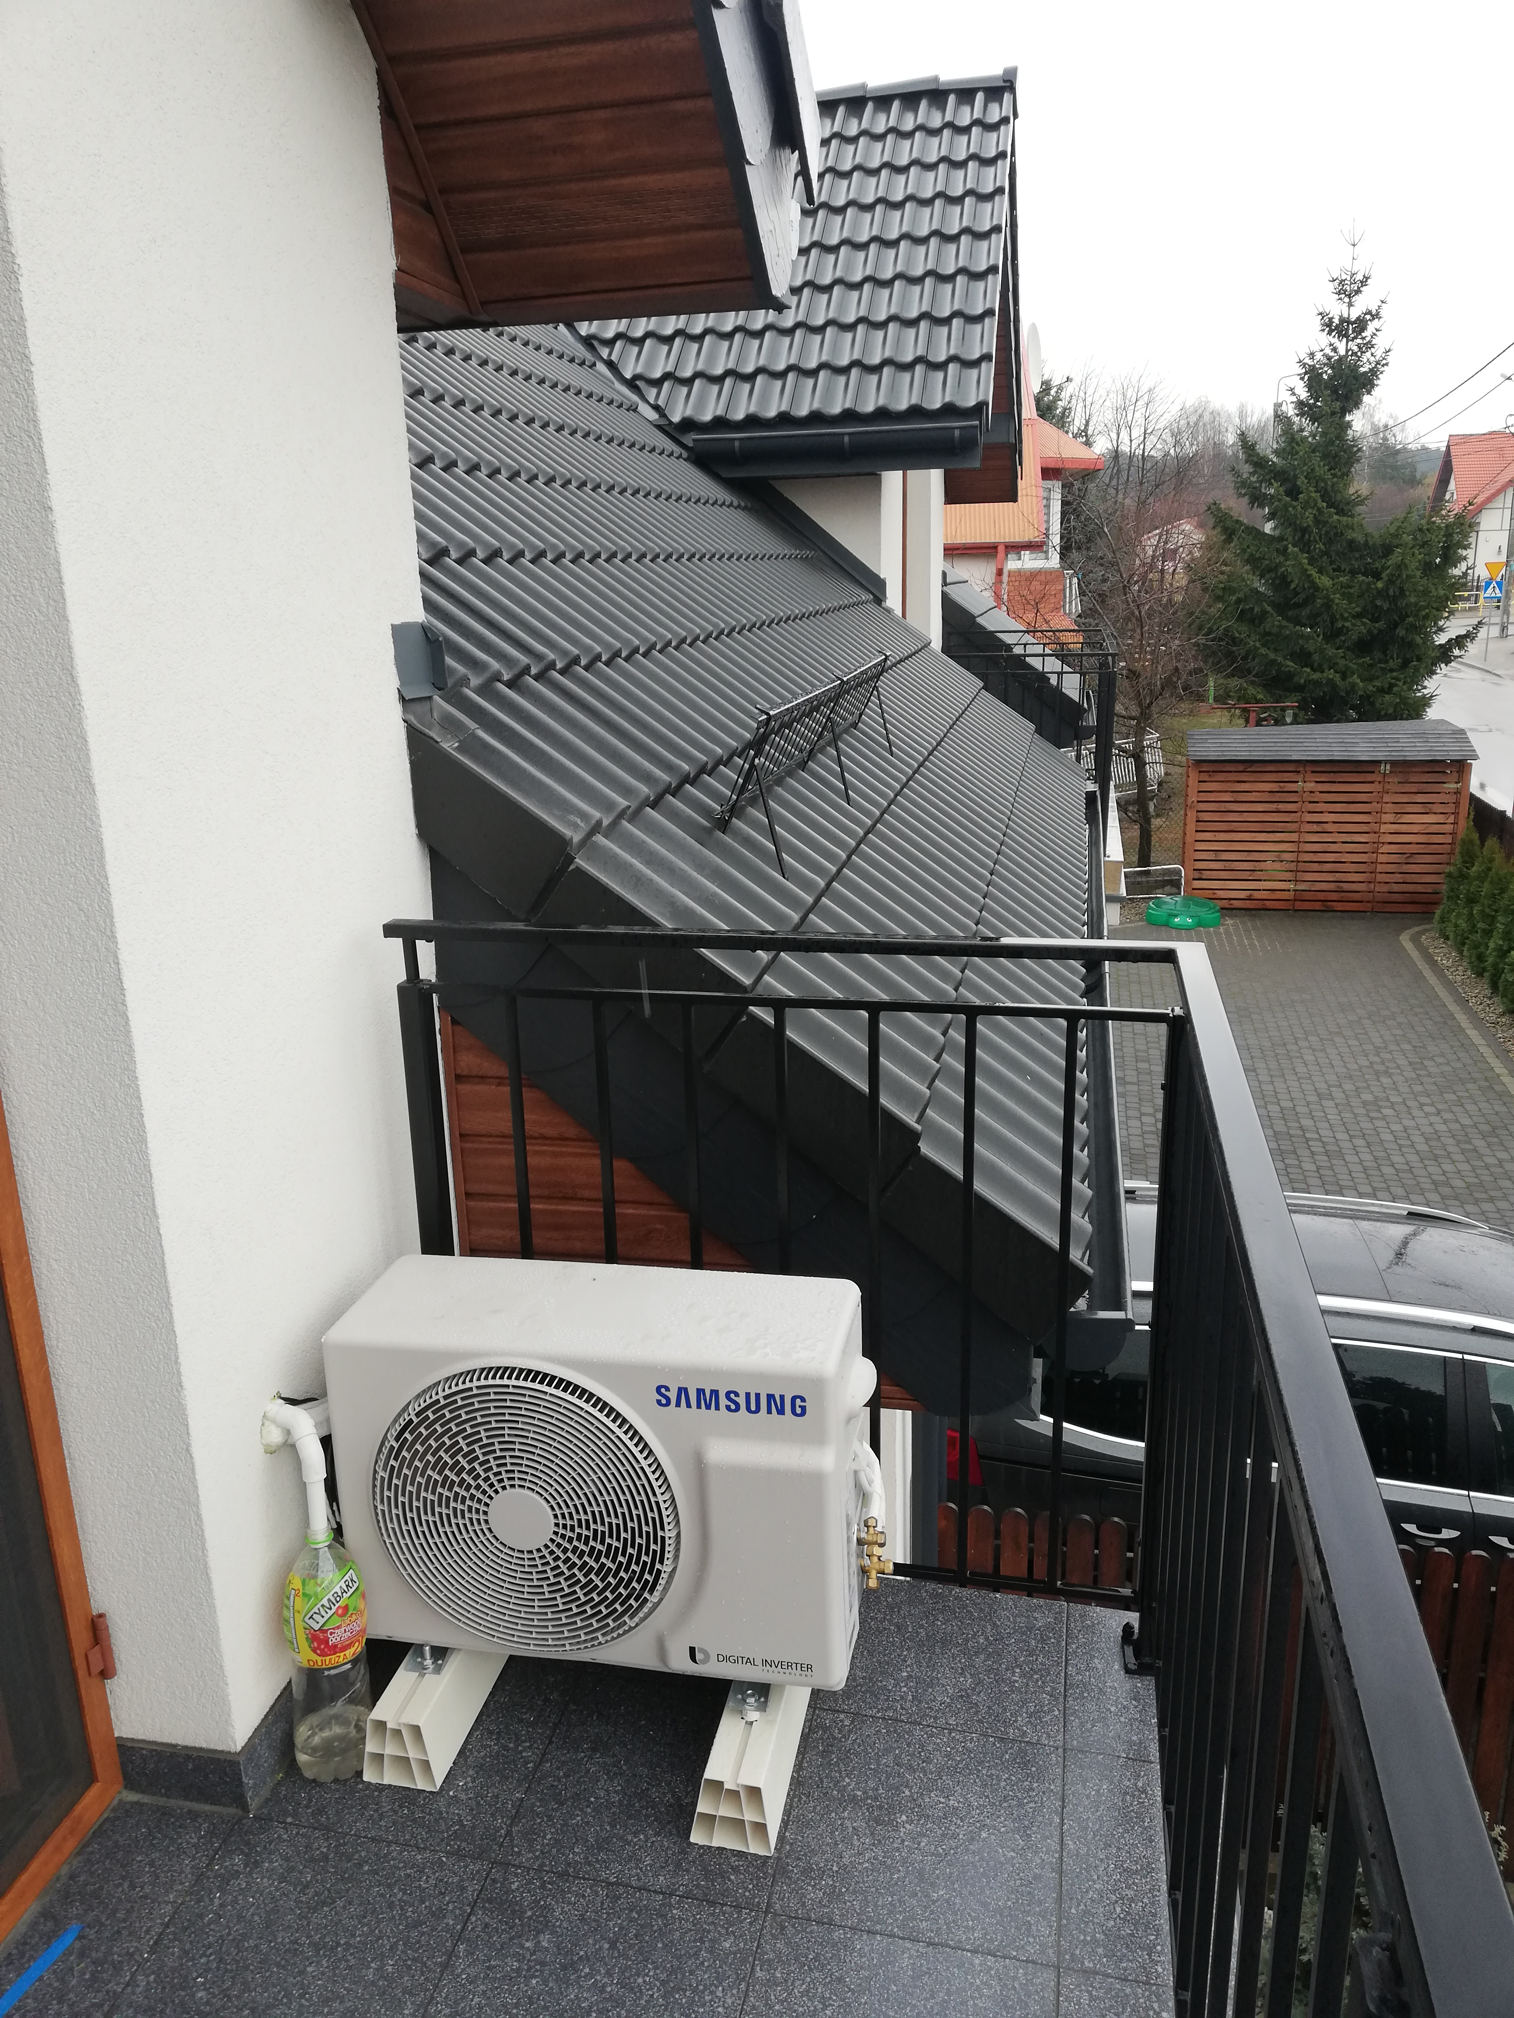 Klimatyzator Samsung Eco na balkonie